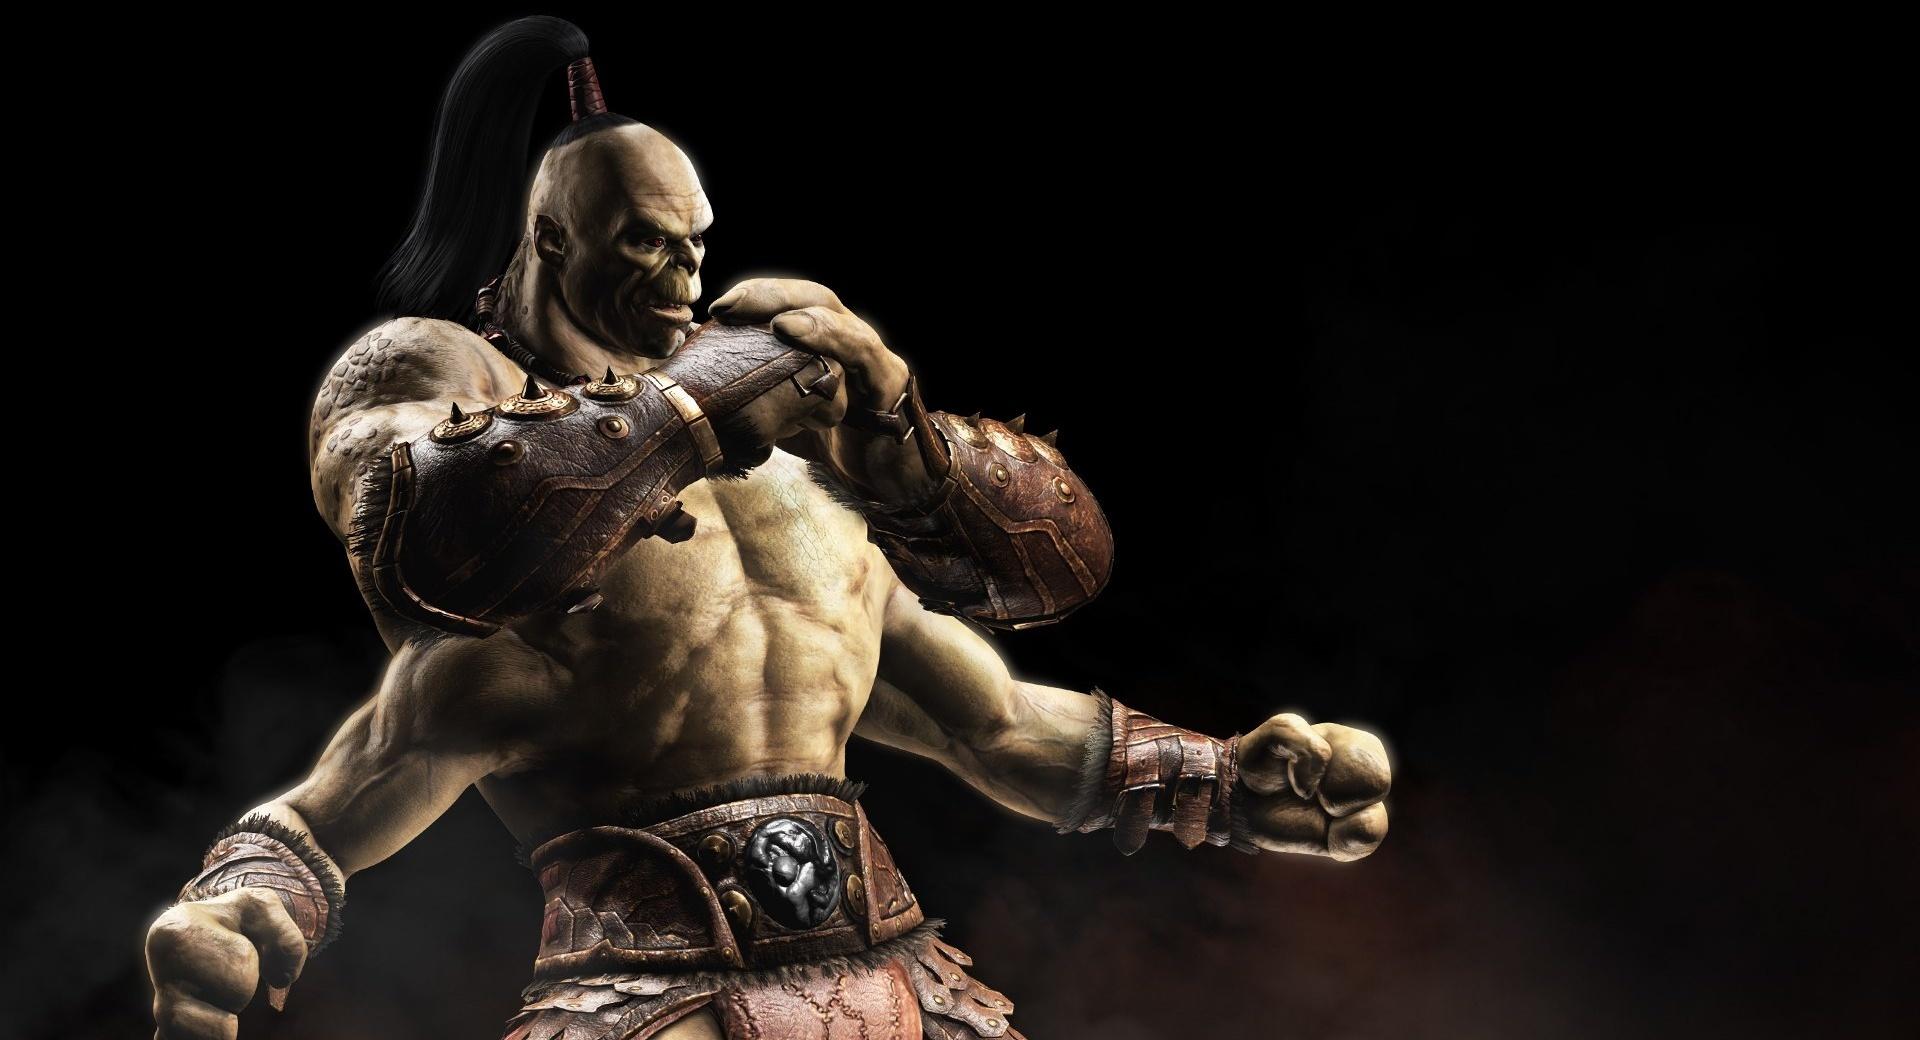 Goro - Mortal Kombat X at 1024 x 1024 iPad size wallpapers HD quality